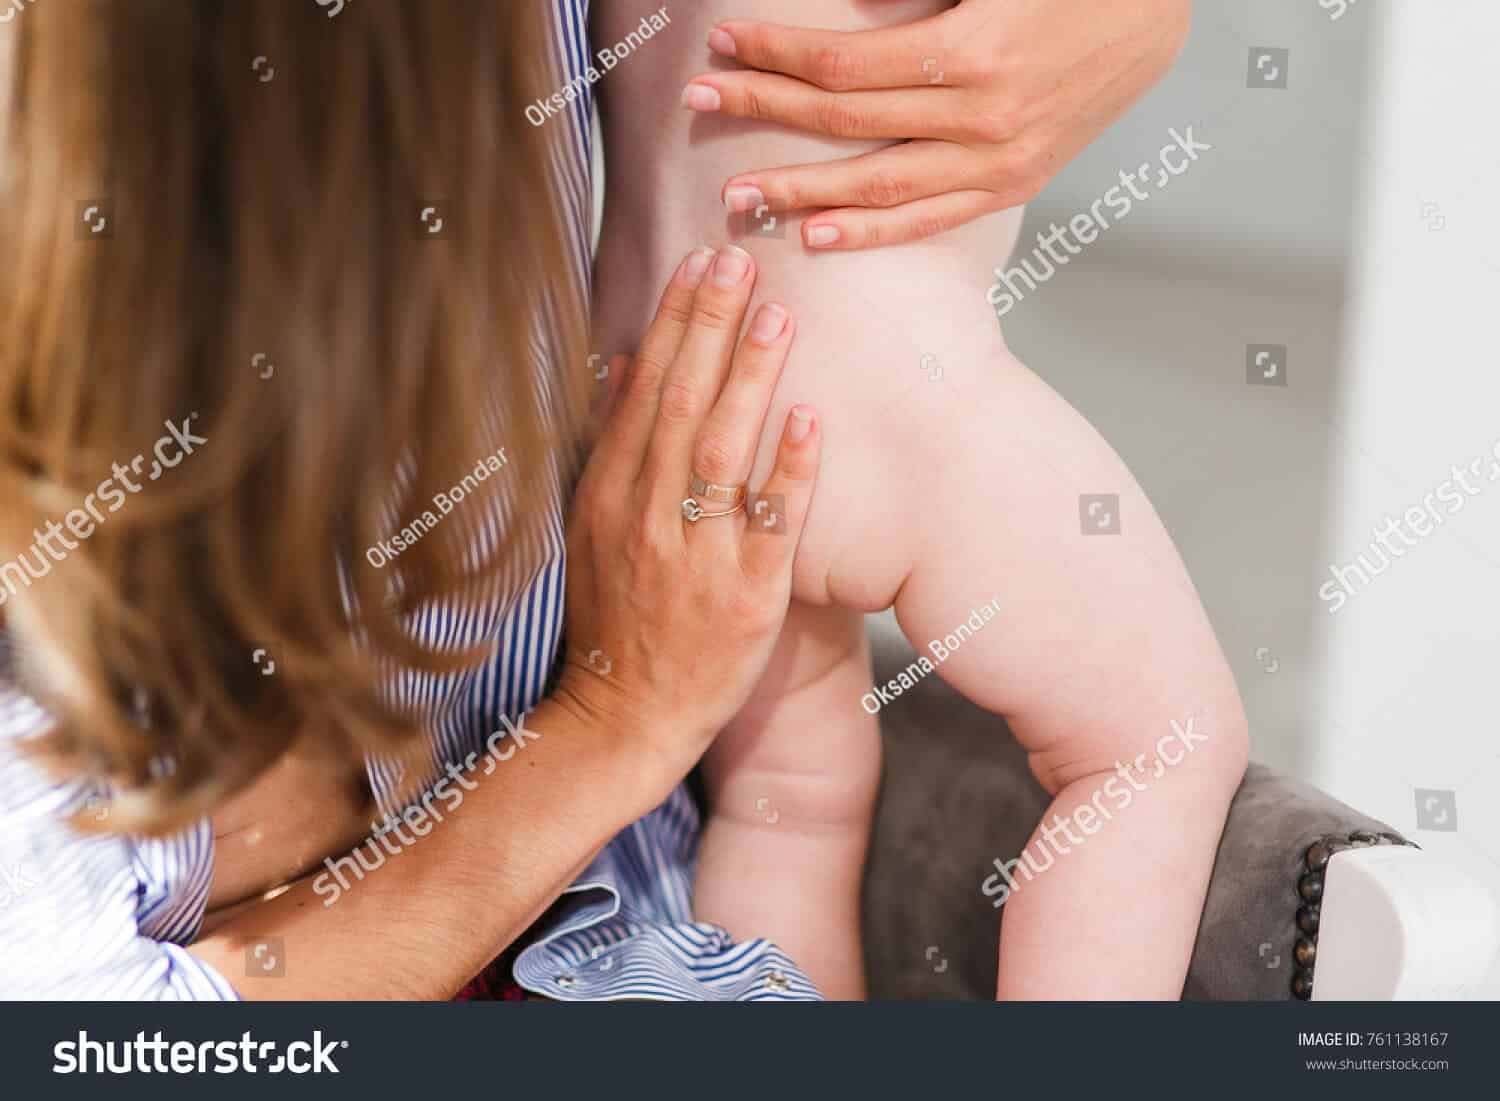 1800 hình ảnh mông em bé chất lượng cao trên Shutterstock